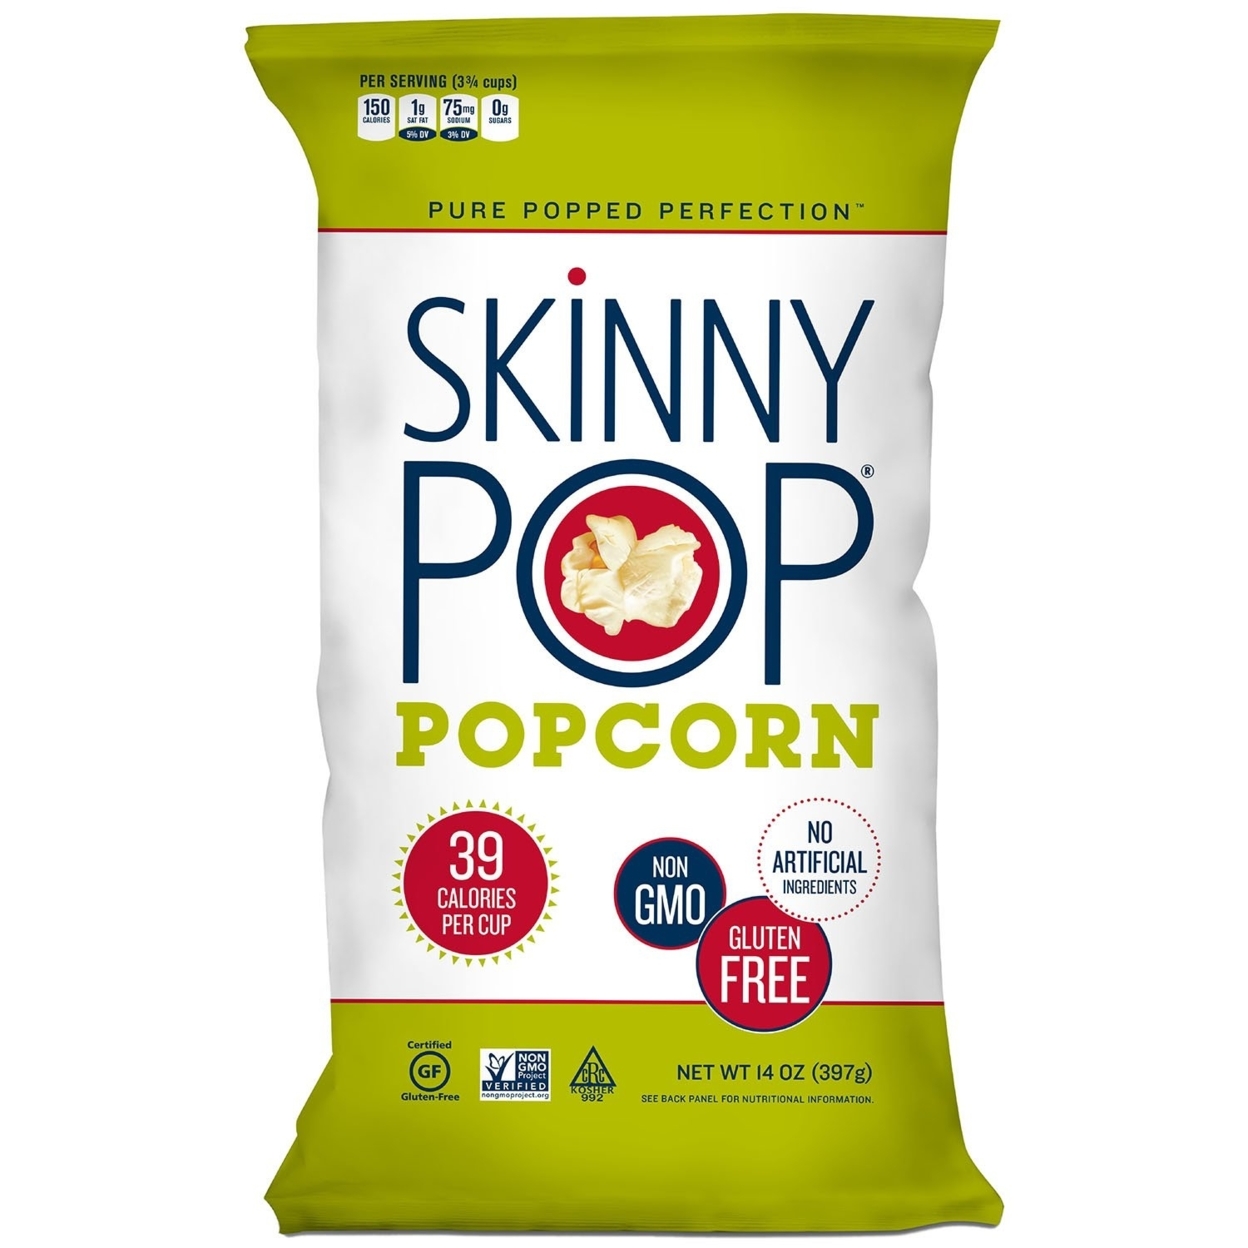 Original Skinny Pop, All Natural Popcorn Gluten FREE - NON GMO 14 Ounce